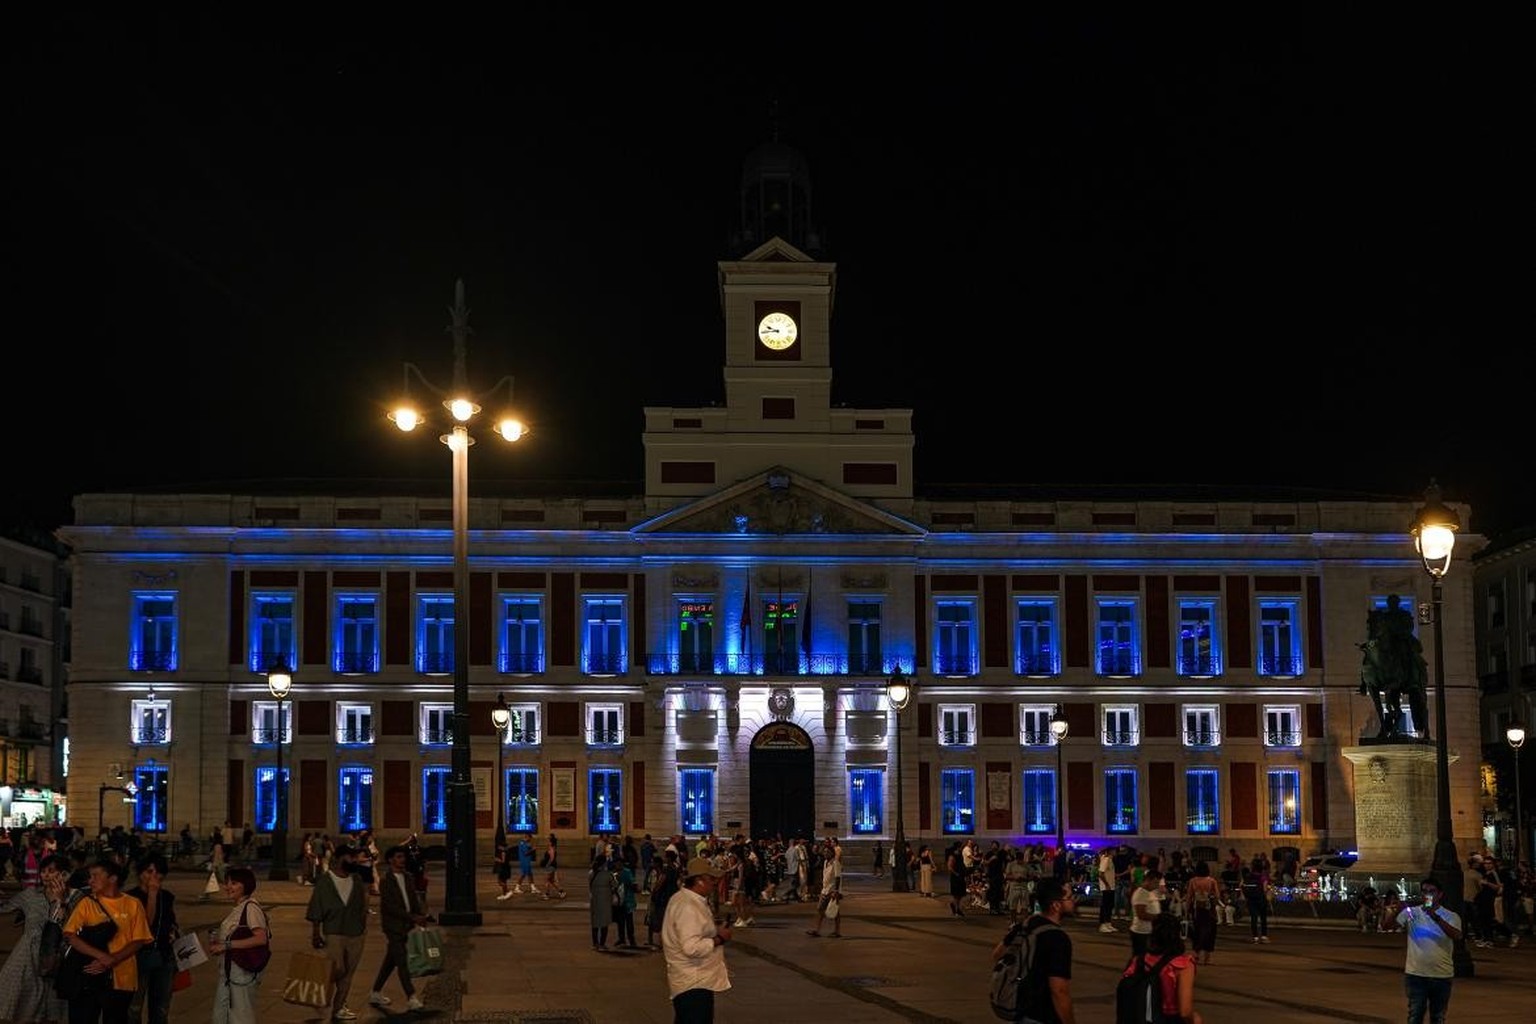 La façade de la Poste Royale, siège de l'Exécutif régional espagnol sur la place Puerta del Sol a été illuminé avec les couleurs blanc et bleu du drapeau israélien.